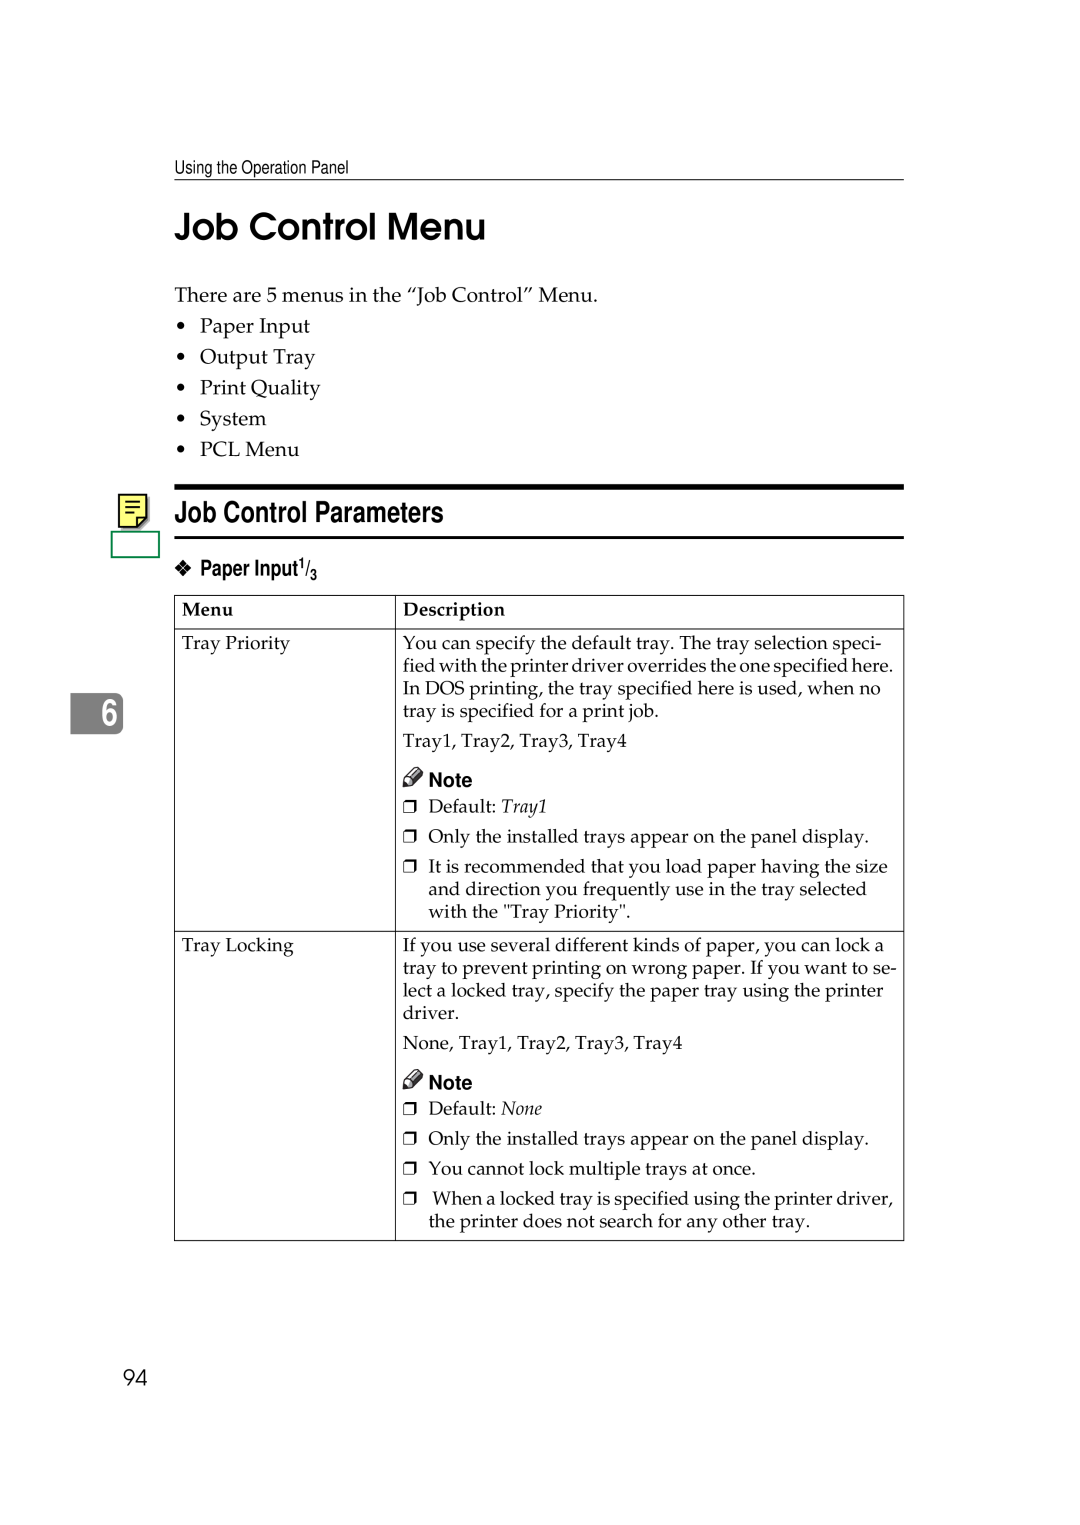 Ricoh Aficio AP2700 operating instructions Job Control Menu, Job Control Parameters, Description 